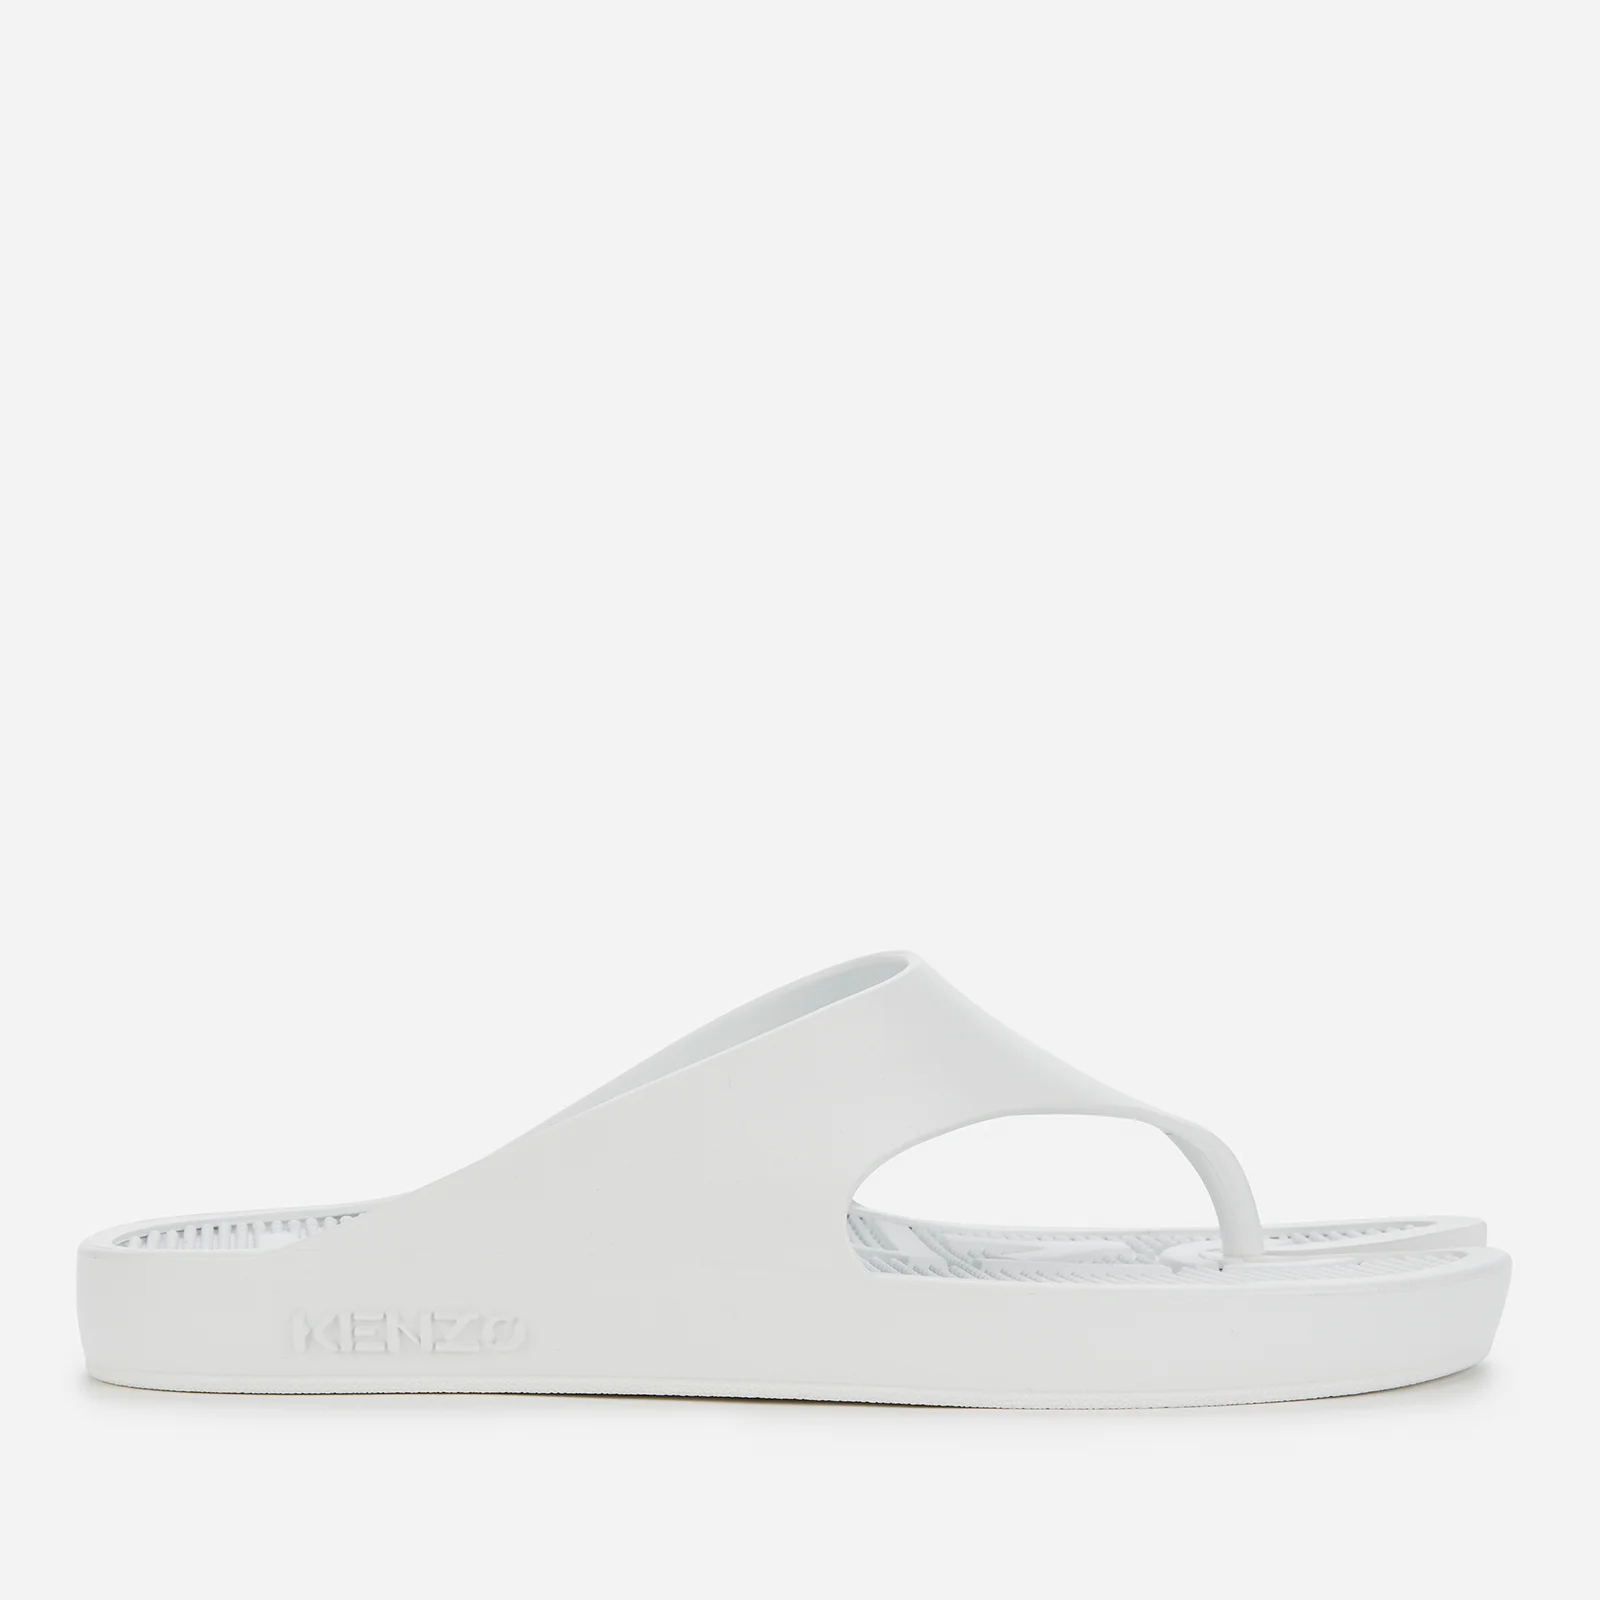 KENZO Women's New Flip Flops - White Image 1